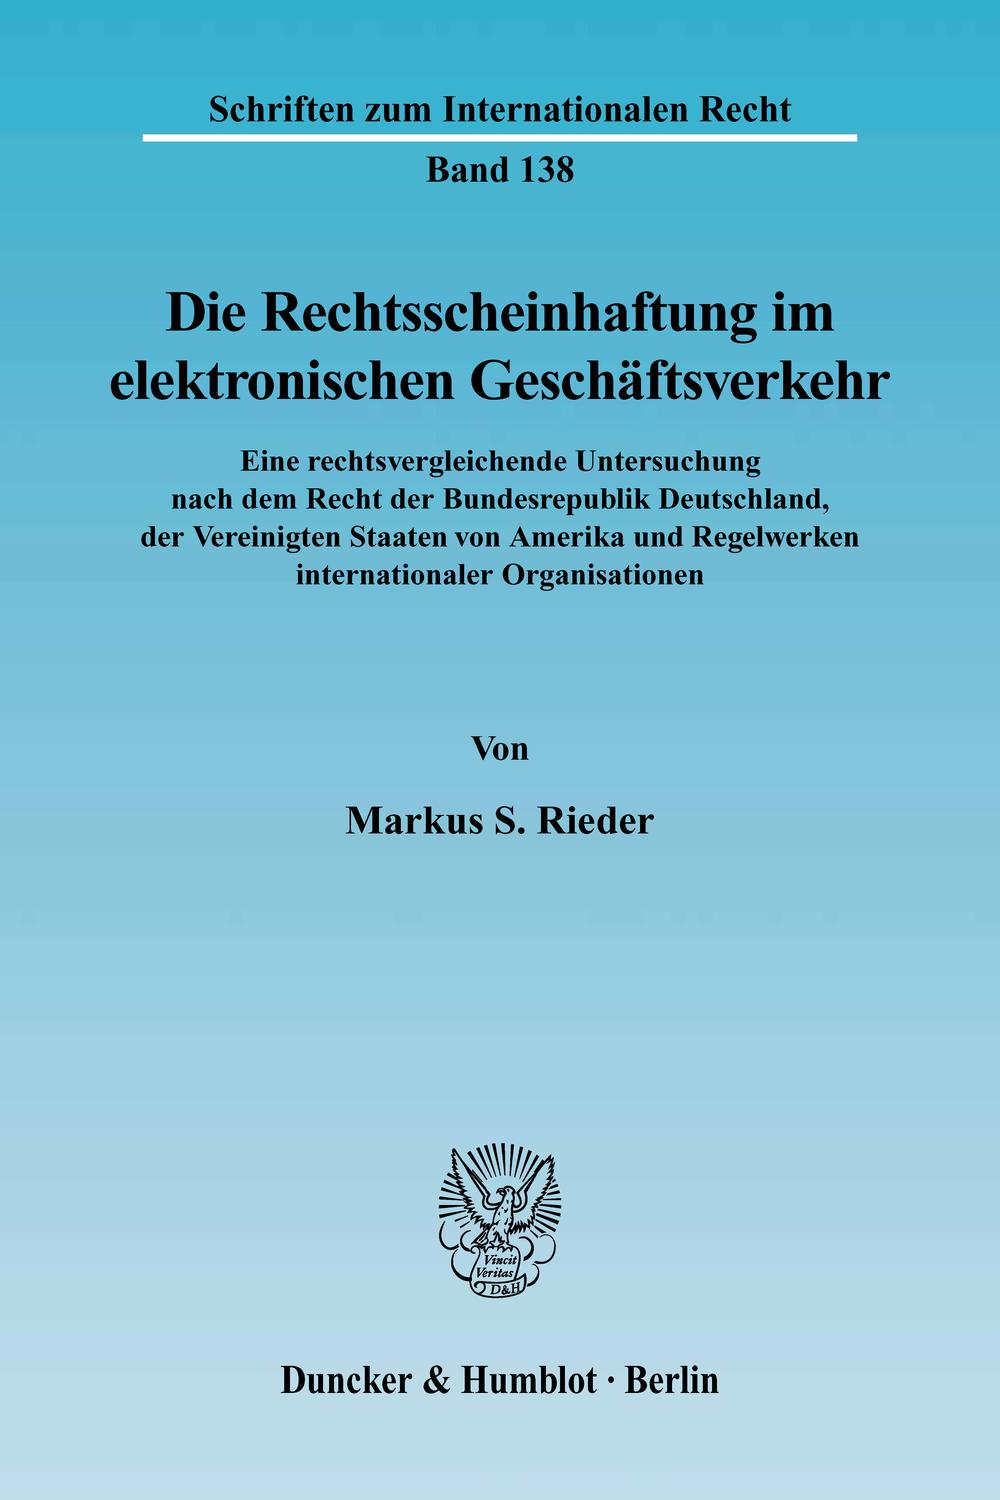 Die Rechtsscheinhaftung im elektronischen Geschäftsverkehr. - Markus S. Rieder